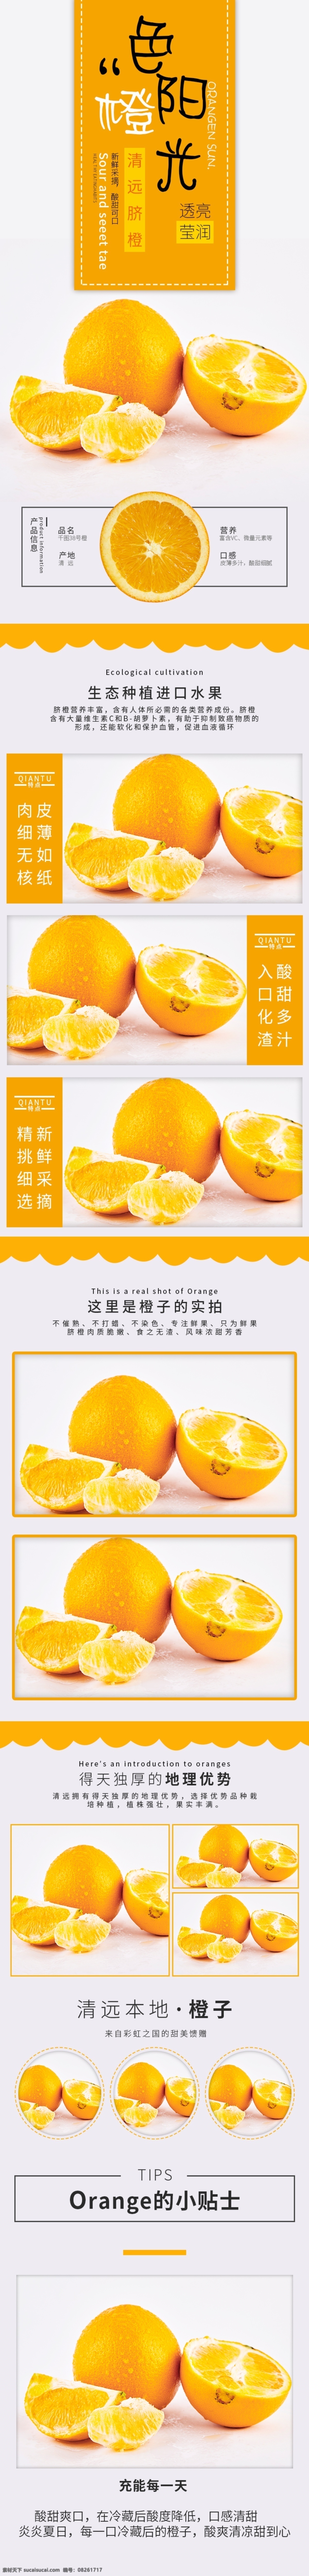 淘宝 电商 脐橙 简约 小 清新 详情 模版 淘宝电商 橙子 水果 食品茶饮